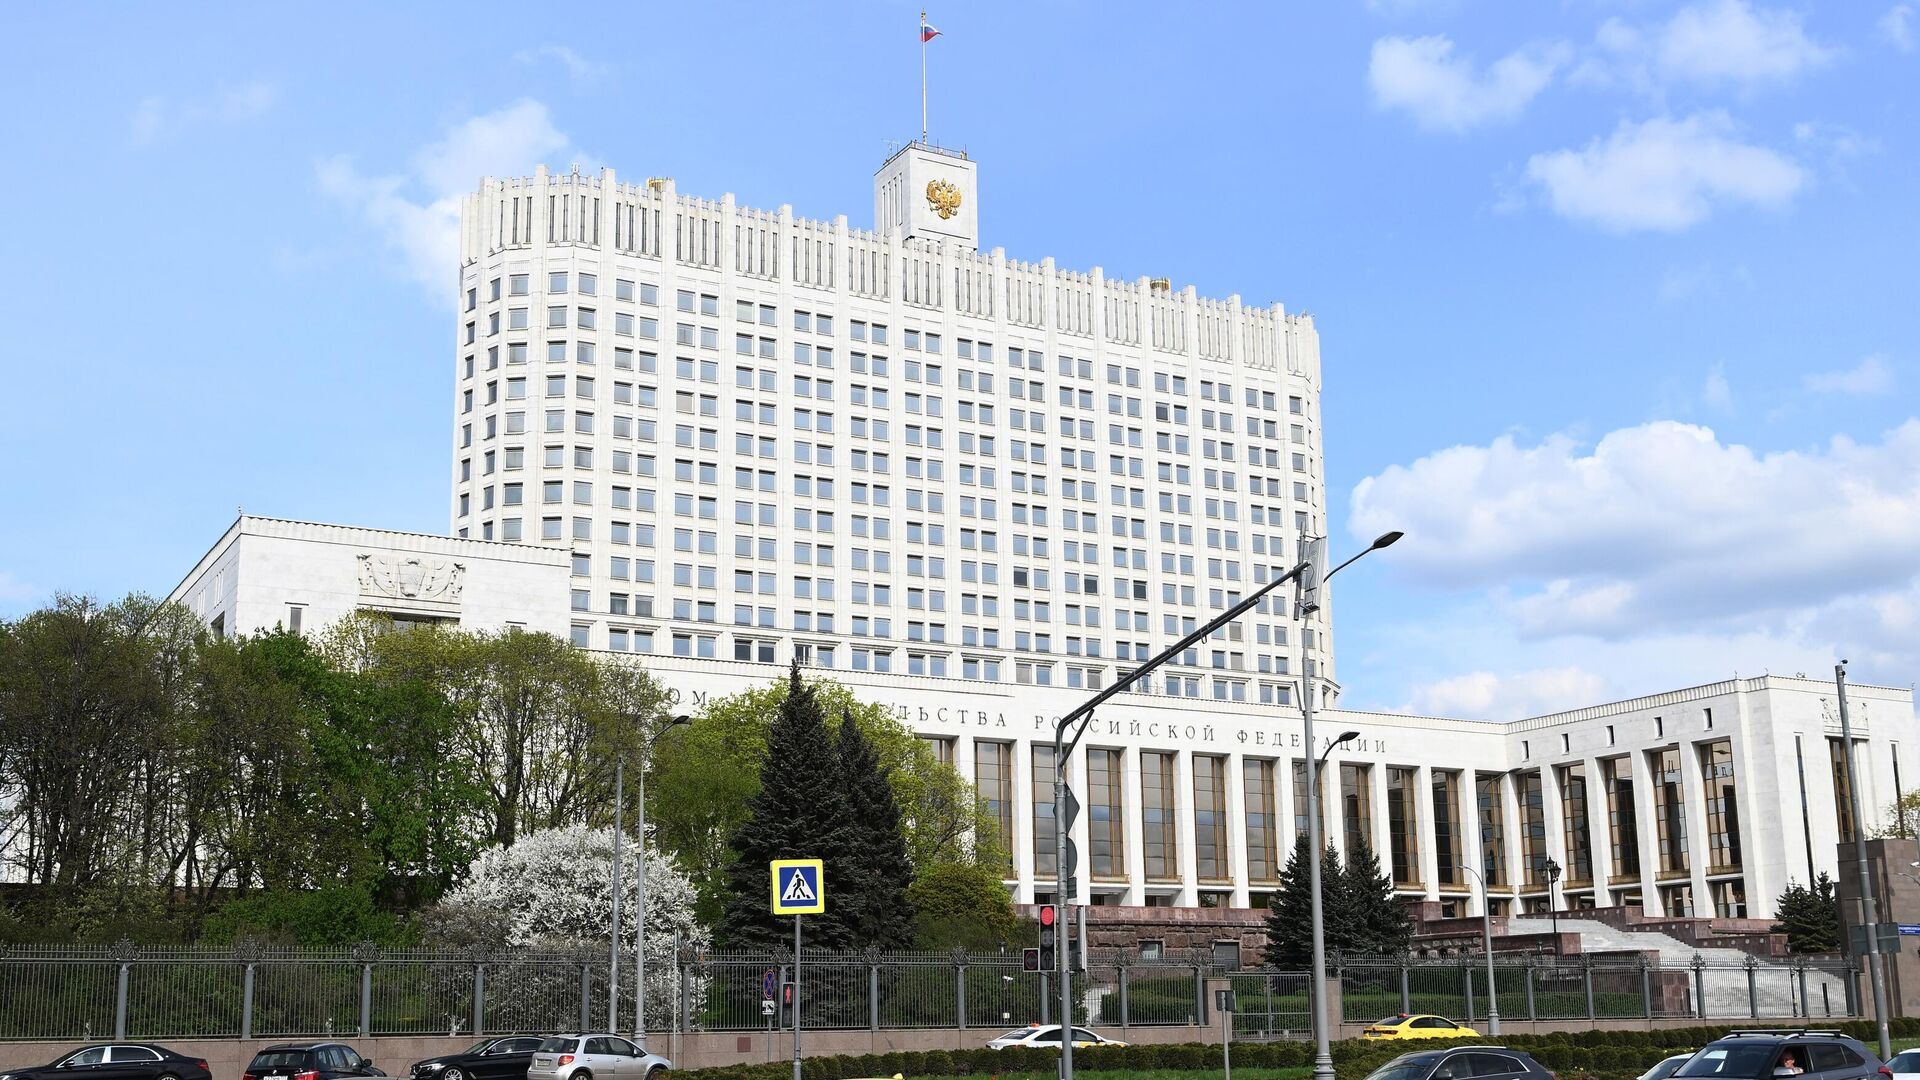 строительство дома правительства в москве